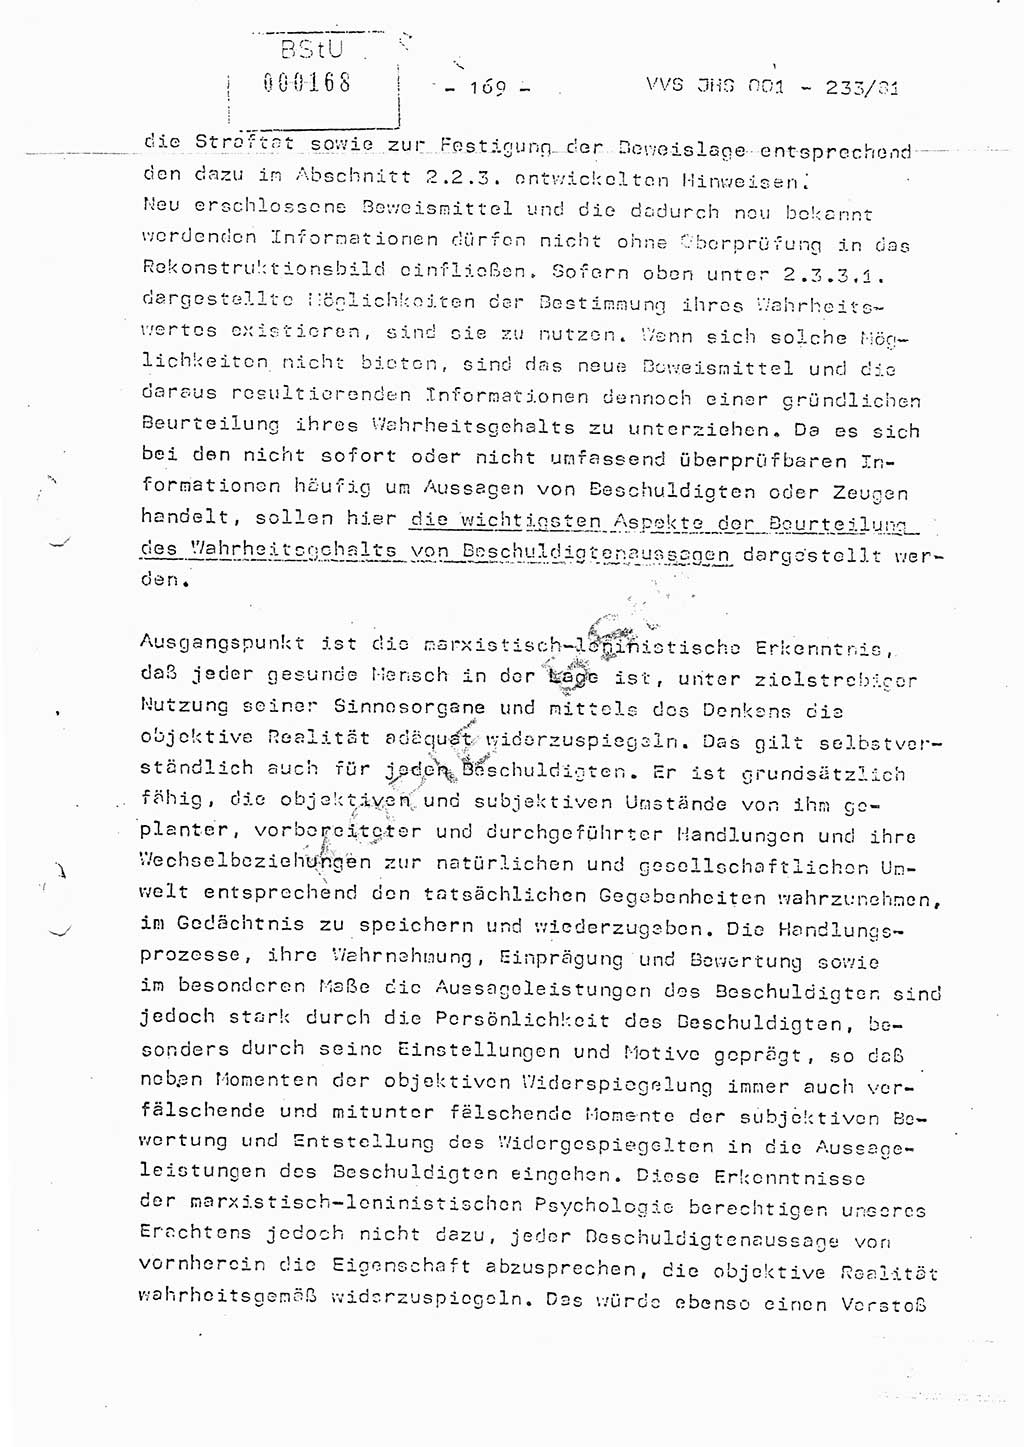 Dissertation Oberstleutnant Horst Zank (JHS), Oberstleutnant Dr. Karl-Heinz Knoblauch (JHS), Oberstleutnant Gustav-Adolf Kowalewski (HA Ⅸ), Oberstleutnant Wolfgang Plötner (HA Ⅸ), Ministerium für Staatssicherheit (MfS) [Deutsche Demokratische Republik (DDR)], Juristische Hochschule (JHS), Vertrauliche Verschlußsache (VVS) o001-233/81, Potsdam 1981, Blatt 169 (Diss. MfS DDR JHS VVS o001-233/81 1981, Bl. 169)